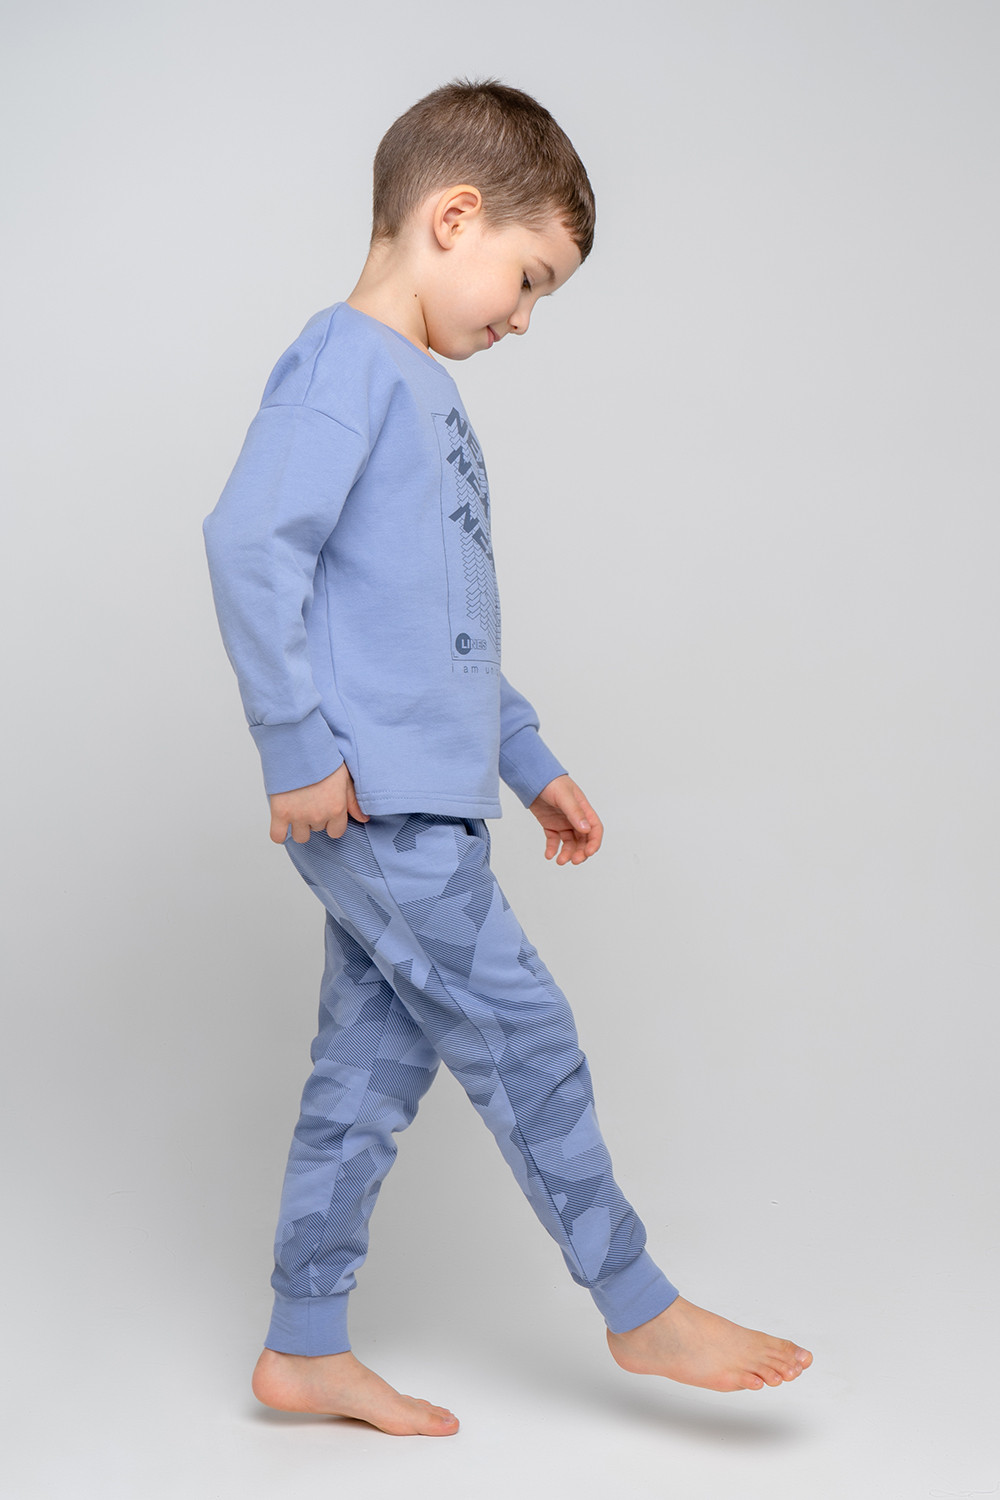 Пижама для мальчика Crockid К 1547 пыльно-голубой джинс, геометрия |  купить, отзывы, цена